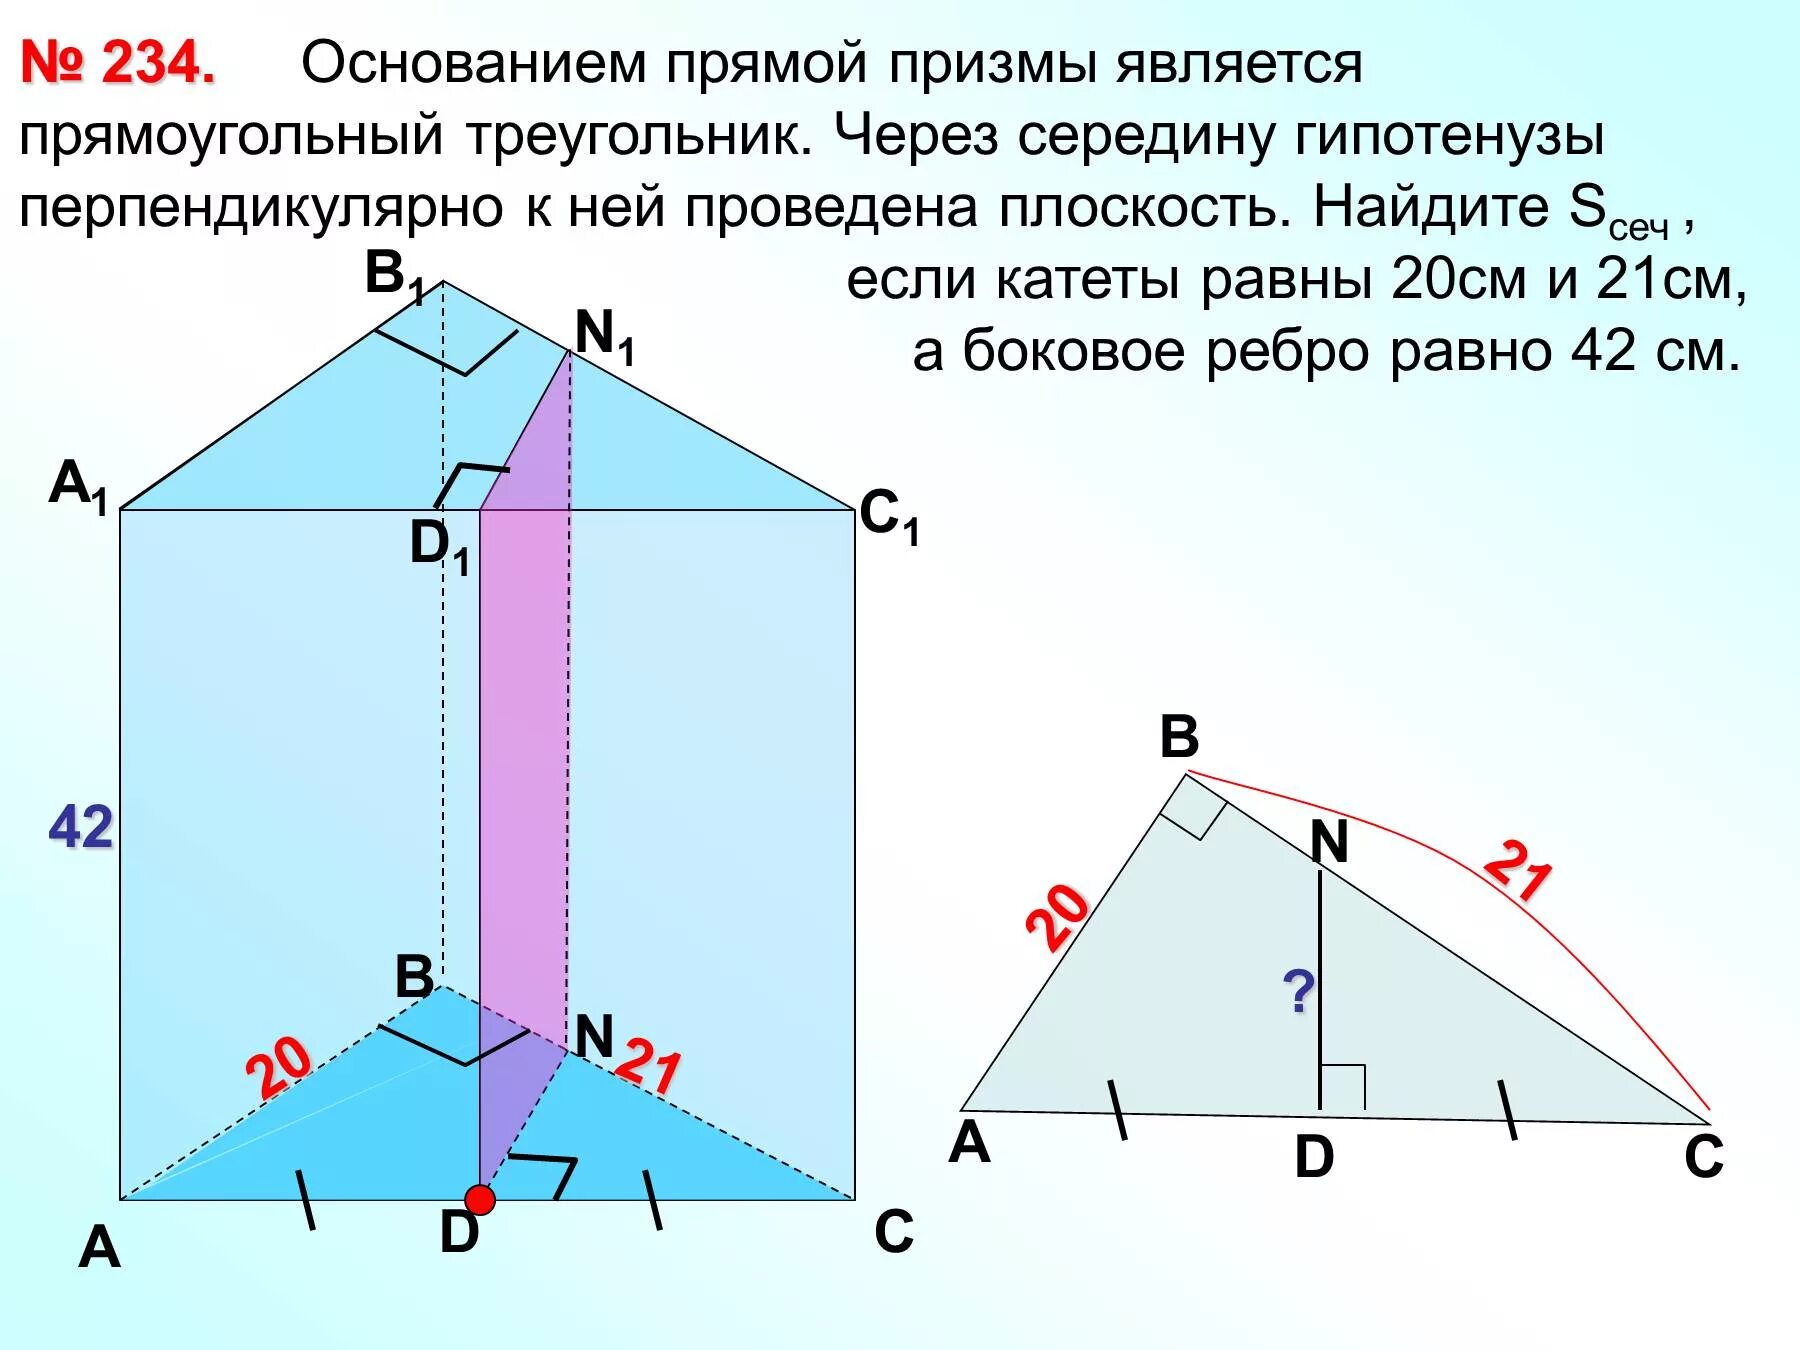 Прямая Призма основания прямой Призмы прямоугольный треугольник. Основпние прямой Призмы с гипртенкзой 13 см катет12. Основание прямой Призмы прямоугольный треугольник с гипотенузой 25 20. Основанием прямой Призмы является прямоугольный треугольник.